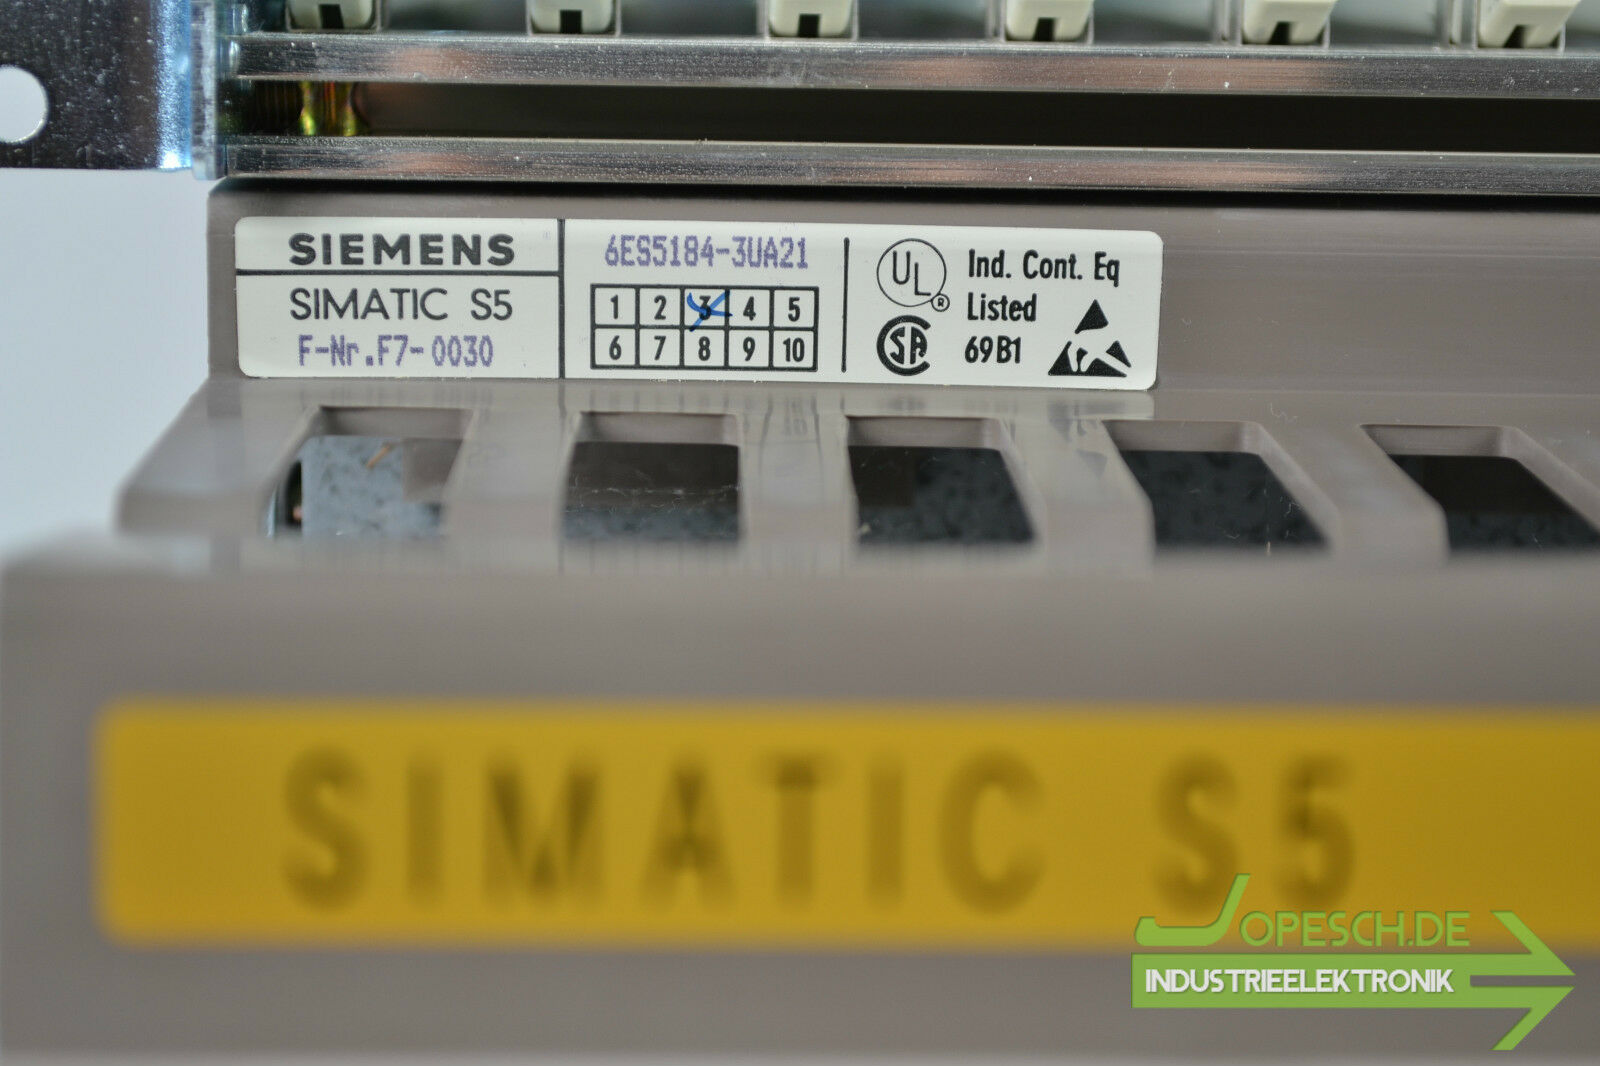 Siemens simatic S5 Rack & Power Supply 6ES5988-3NA11 & 6ES5184-3UA21